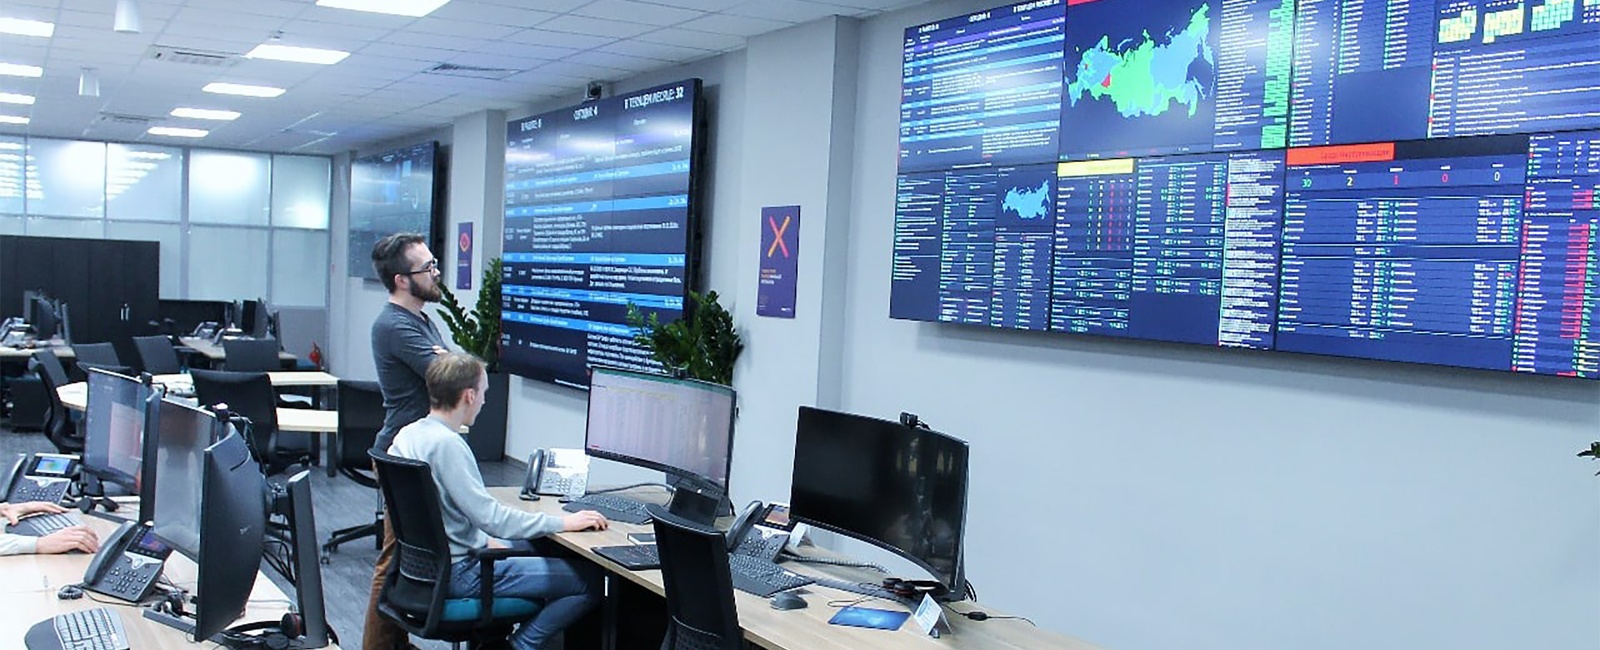 Ситуационный центр ИТ-кластера компании «Газпром нефть»